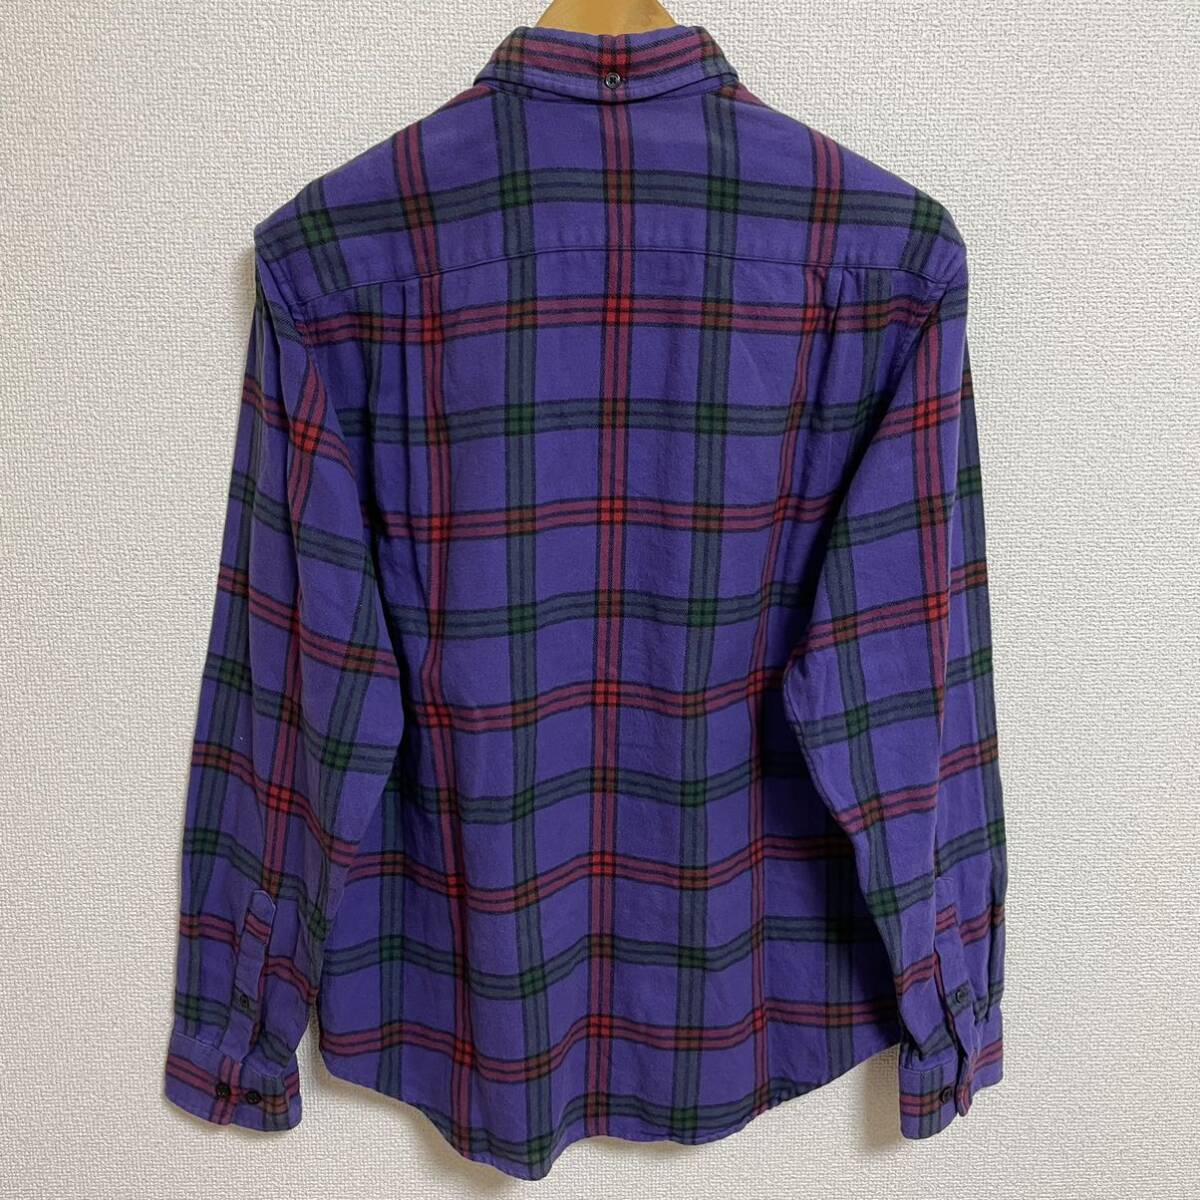 Supreme Tartan Flannel Shirt Purple M 19aw 2019年 紫 パープル タータン フランネル シャツ チェック 長袖シャツ_画像2